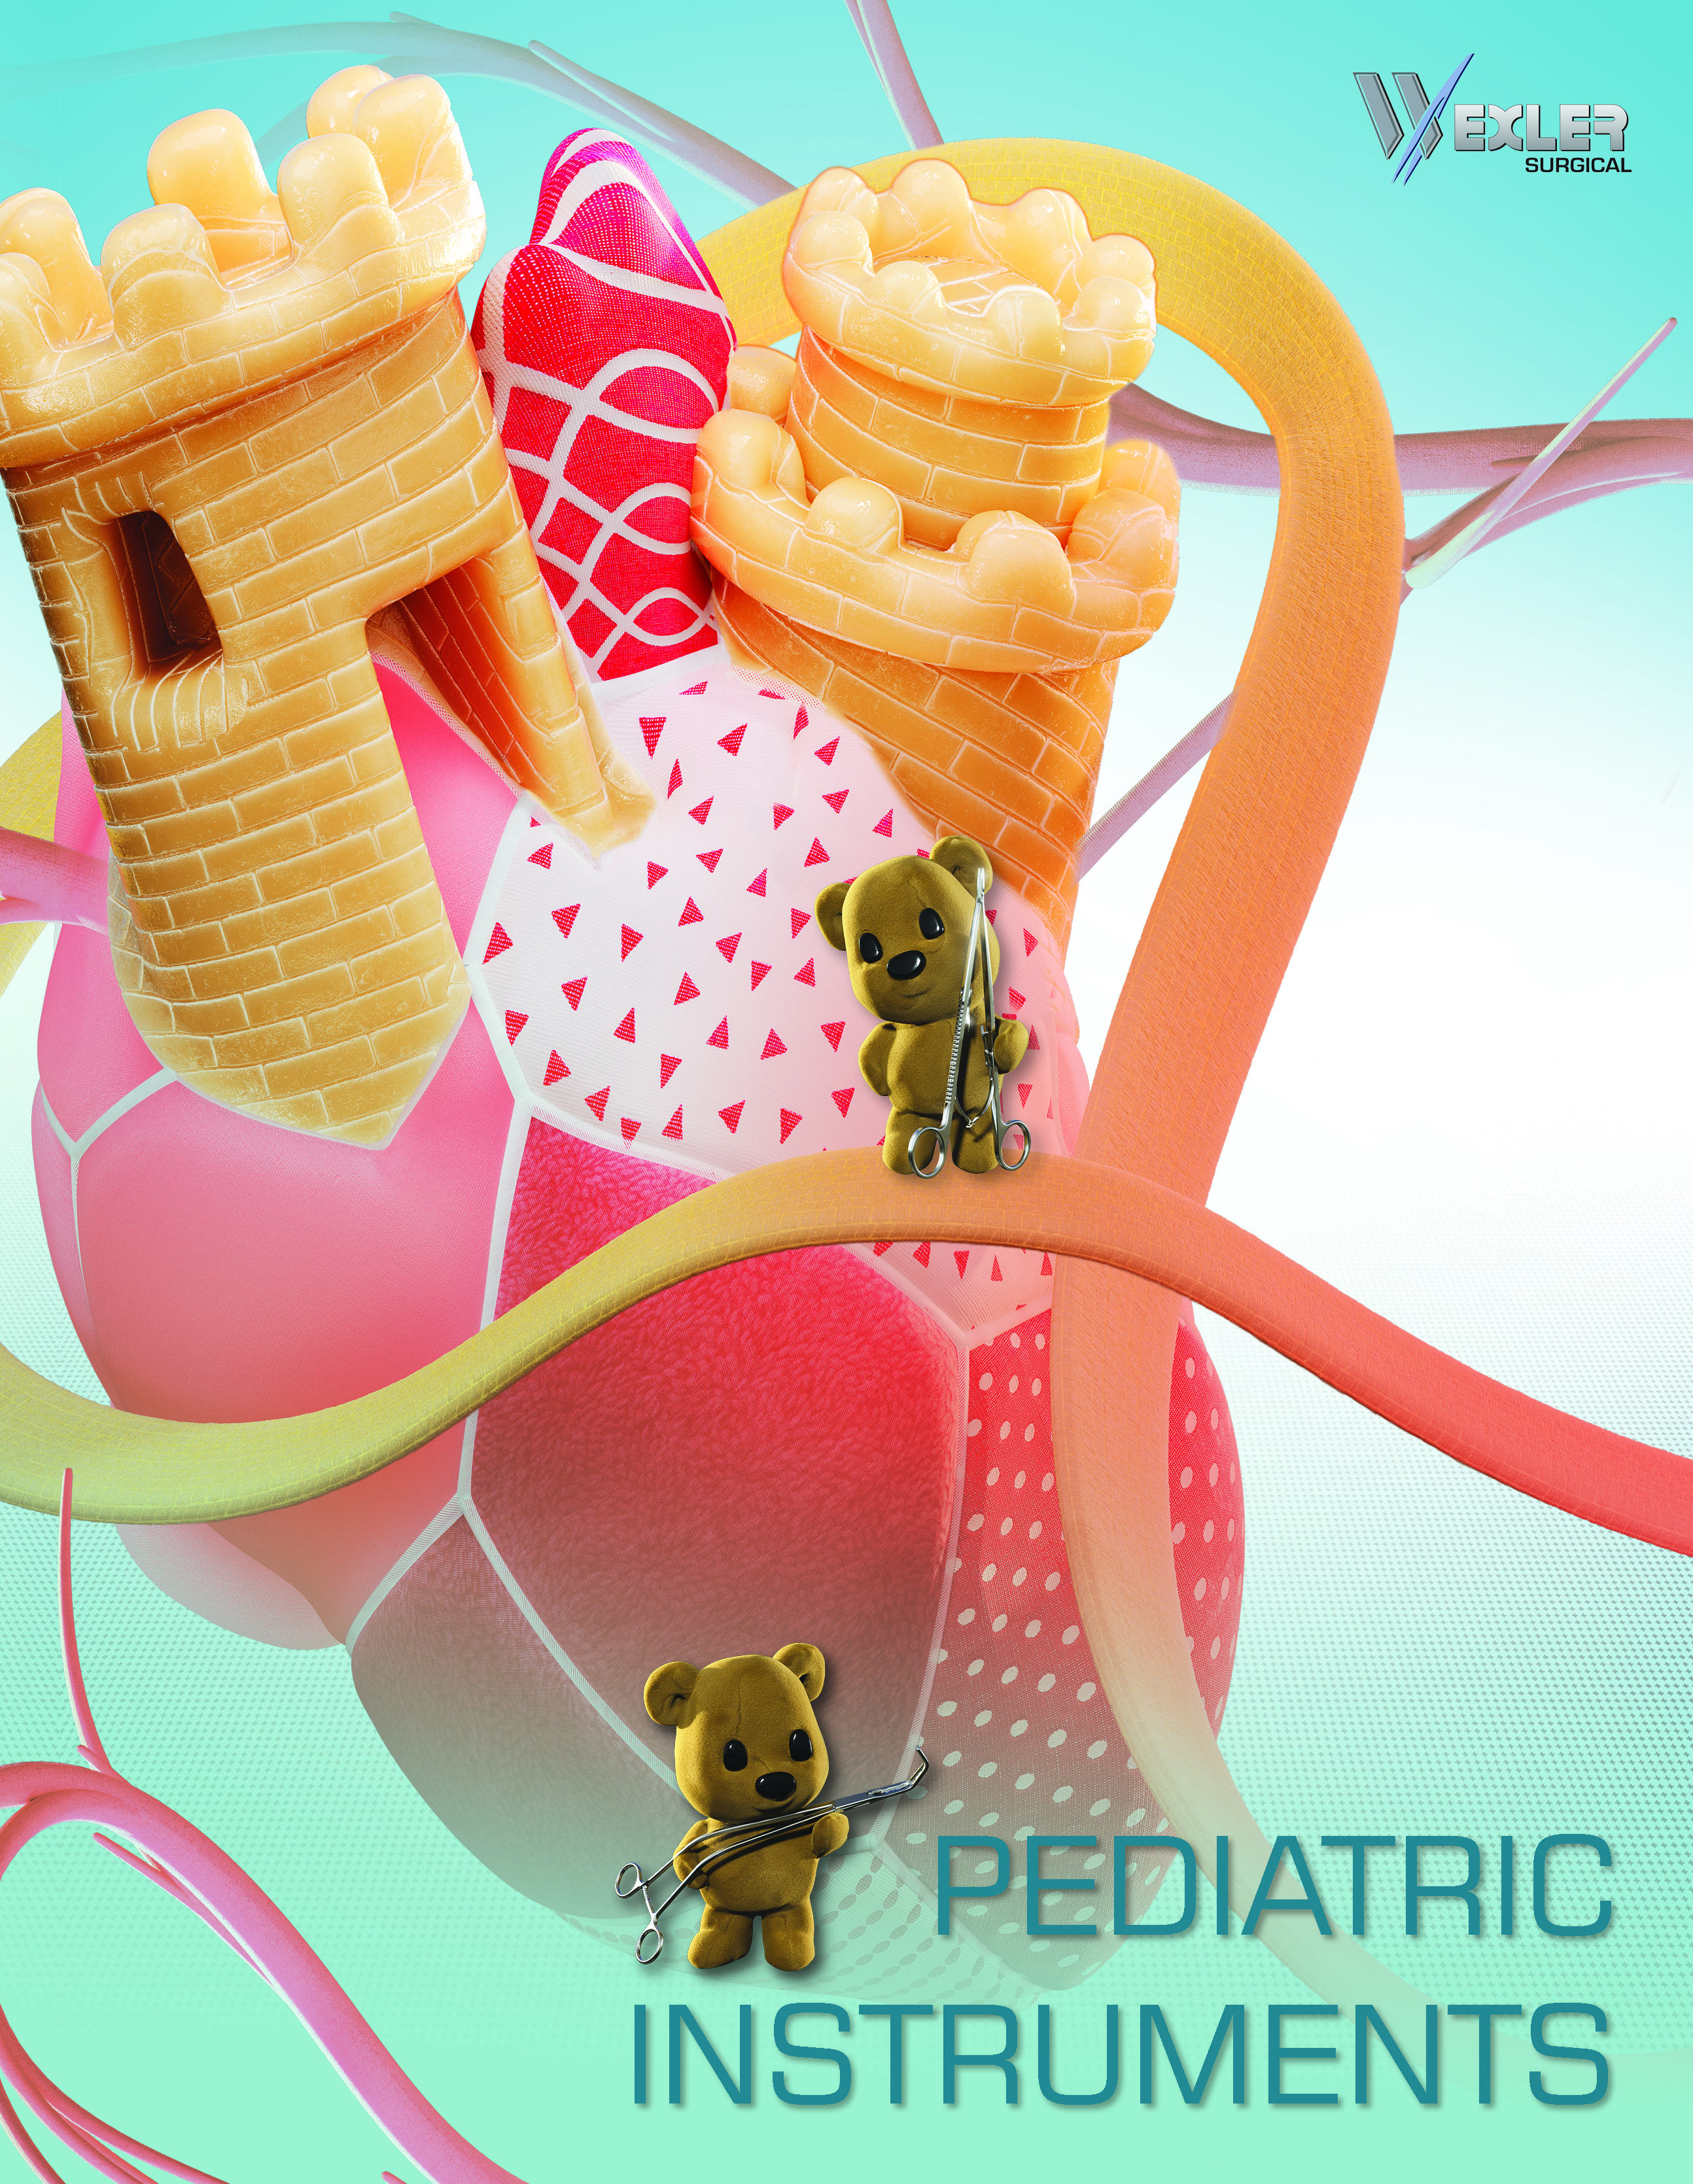 Pediatric Catalog